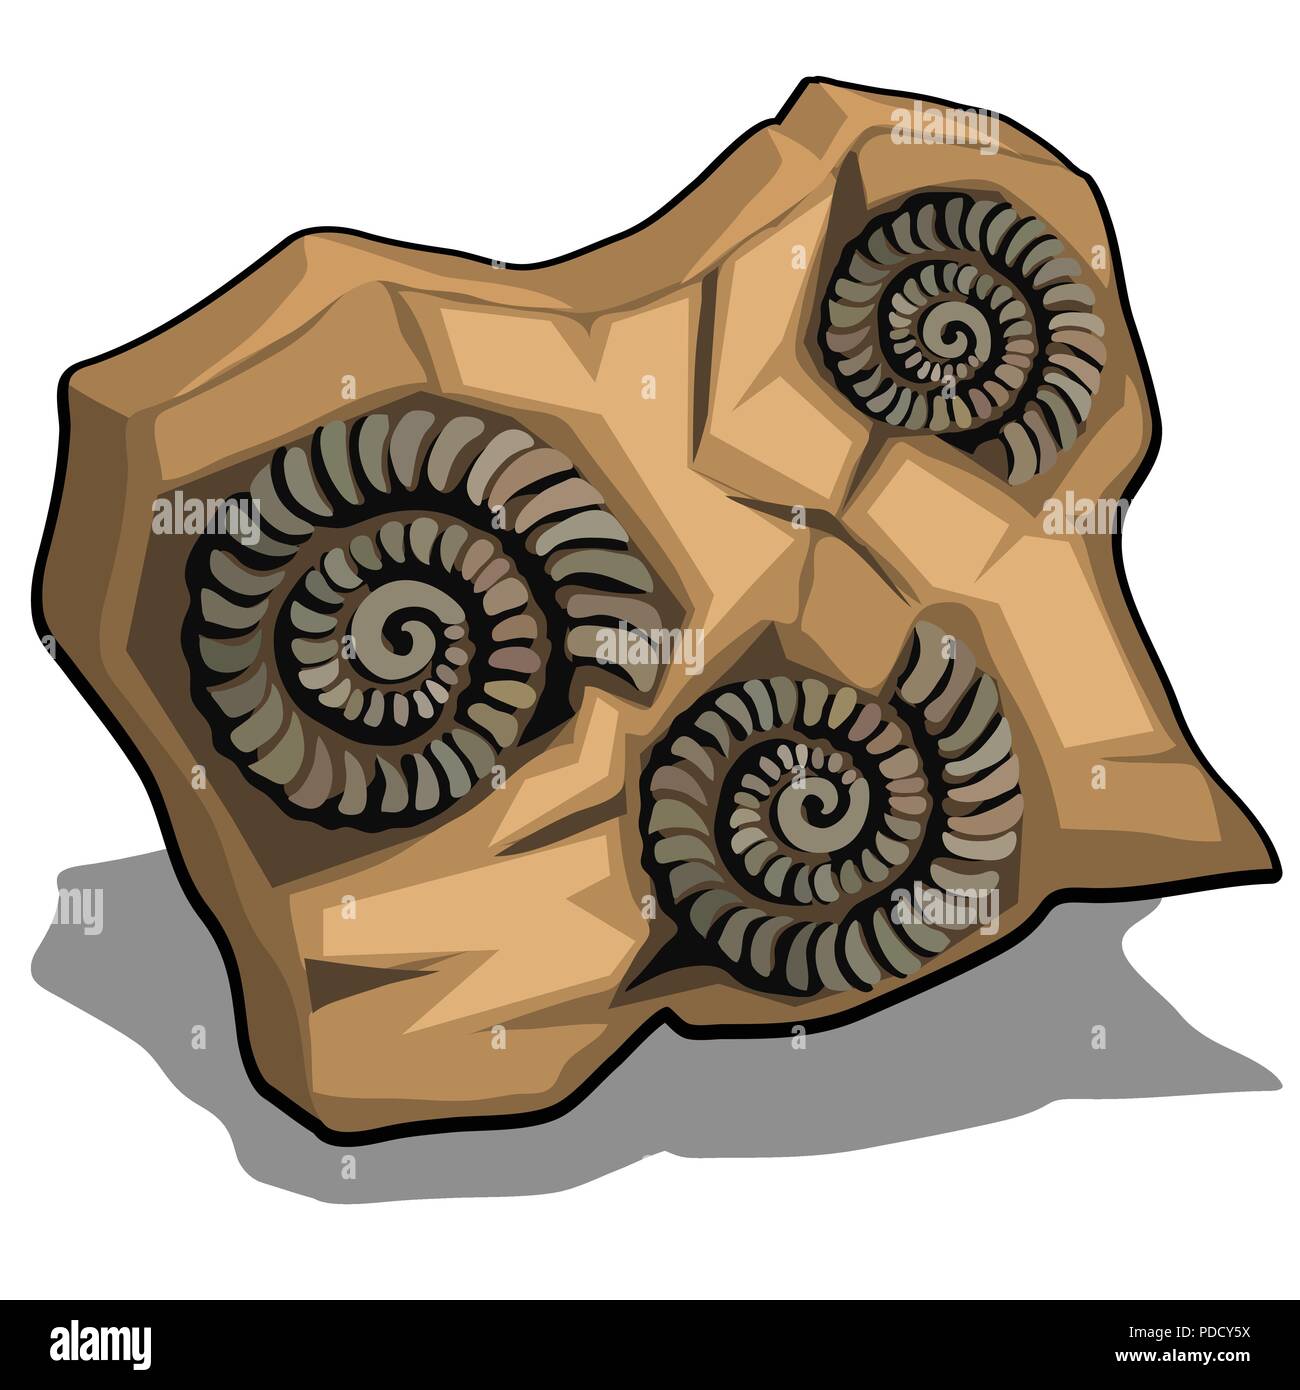 Ensemble d'ammonites fossilisées de shell isolé sur un fond blanc. Cartoon Vector illustration close-up. Illustration de Vecteur